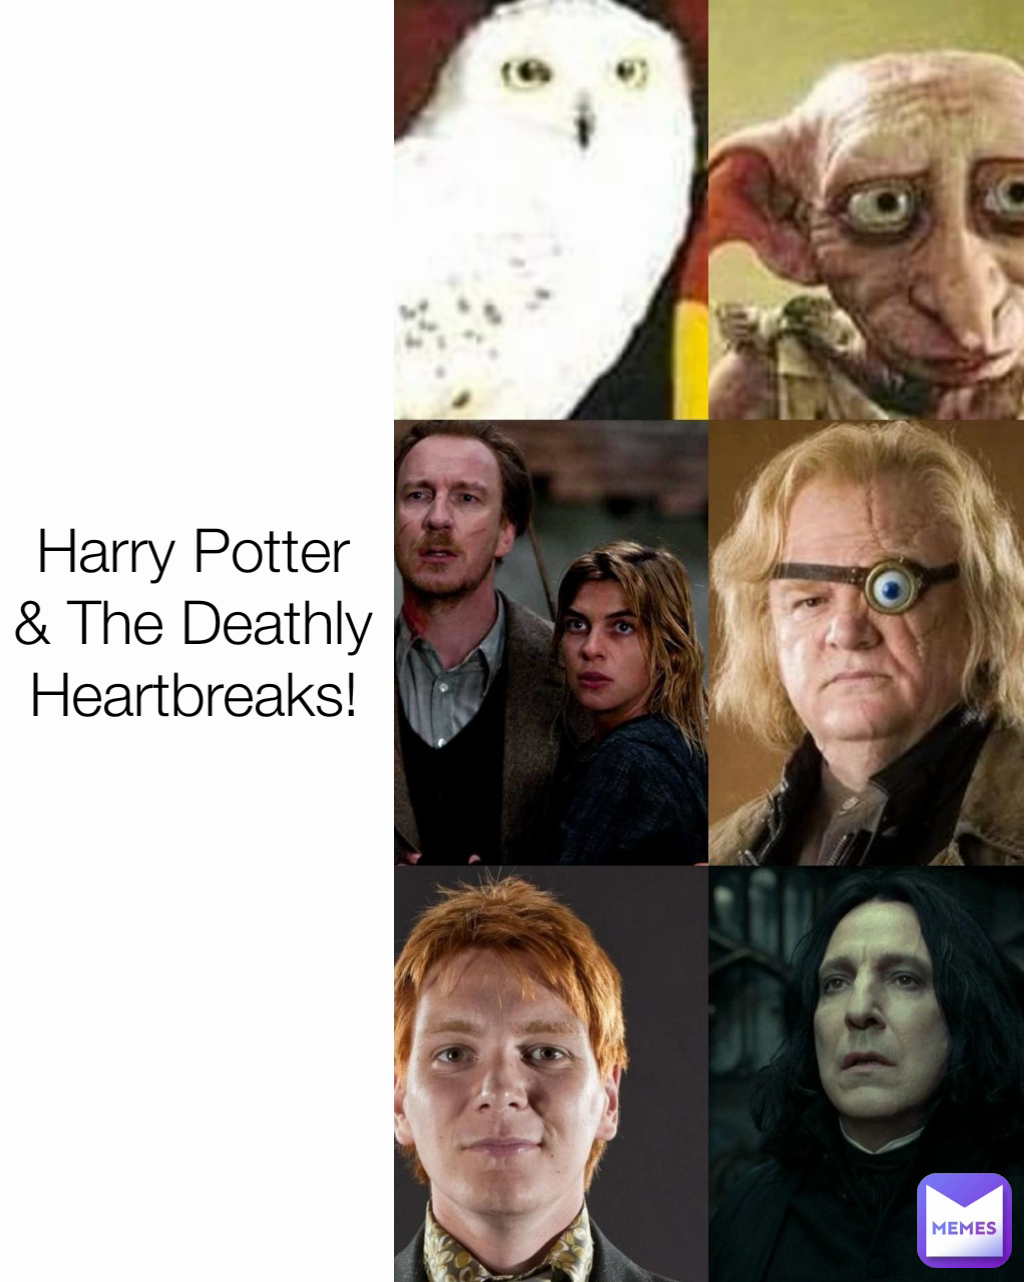 Harry Potter & The Deathly Heartbreaks!